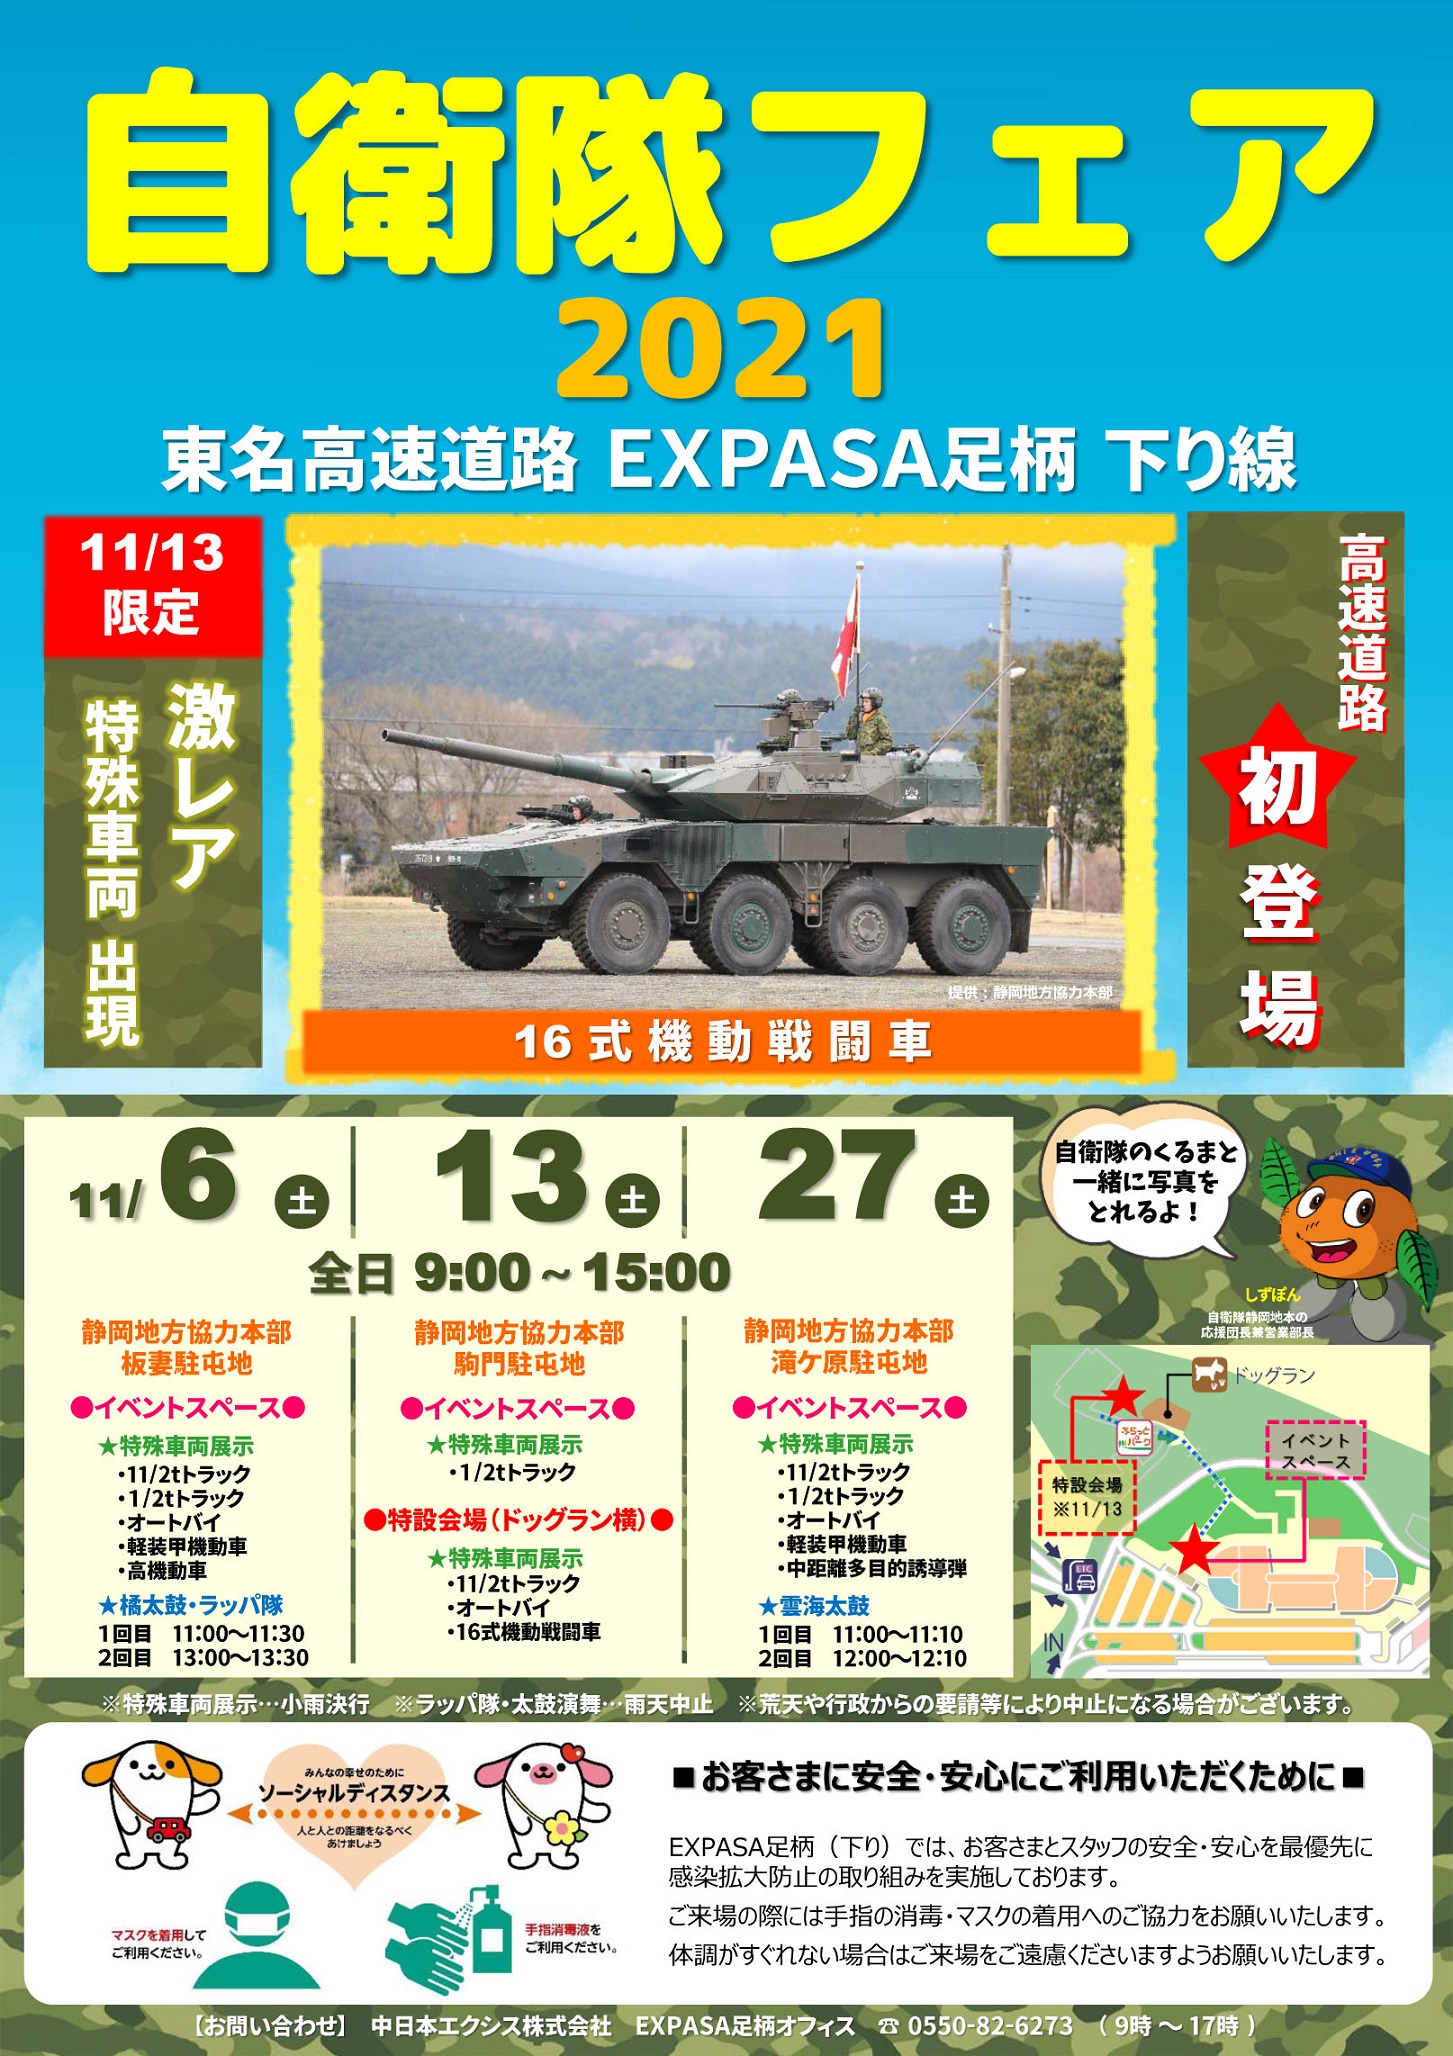 自衛隊フェア2021 in 東名高速道路EXPASA足柄ポスター